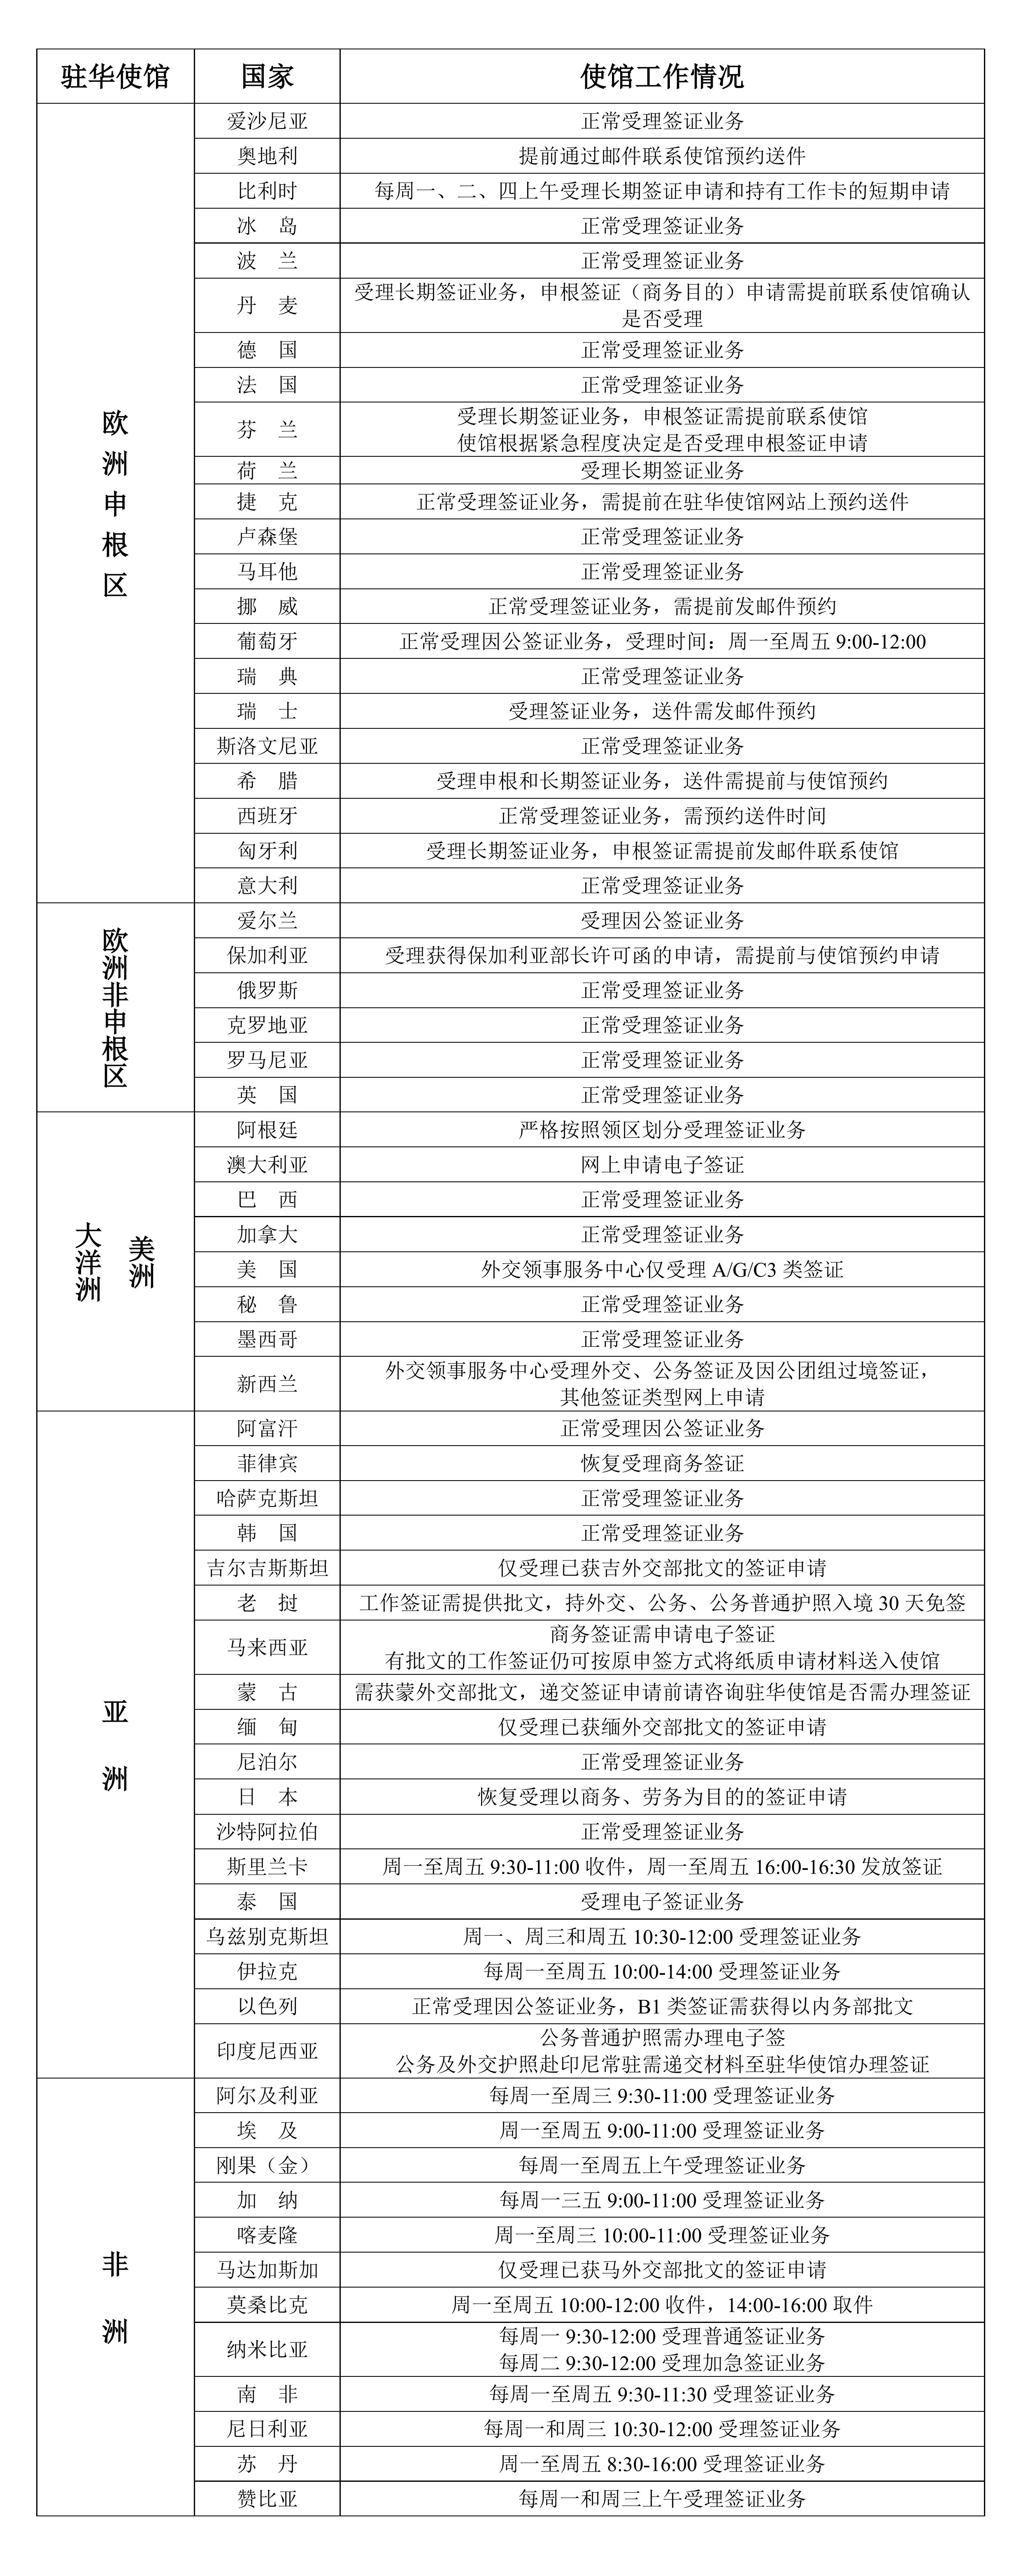 2022年11月22日部分驻华使馆工作情况统计表_00.jpg